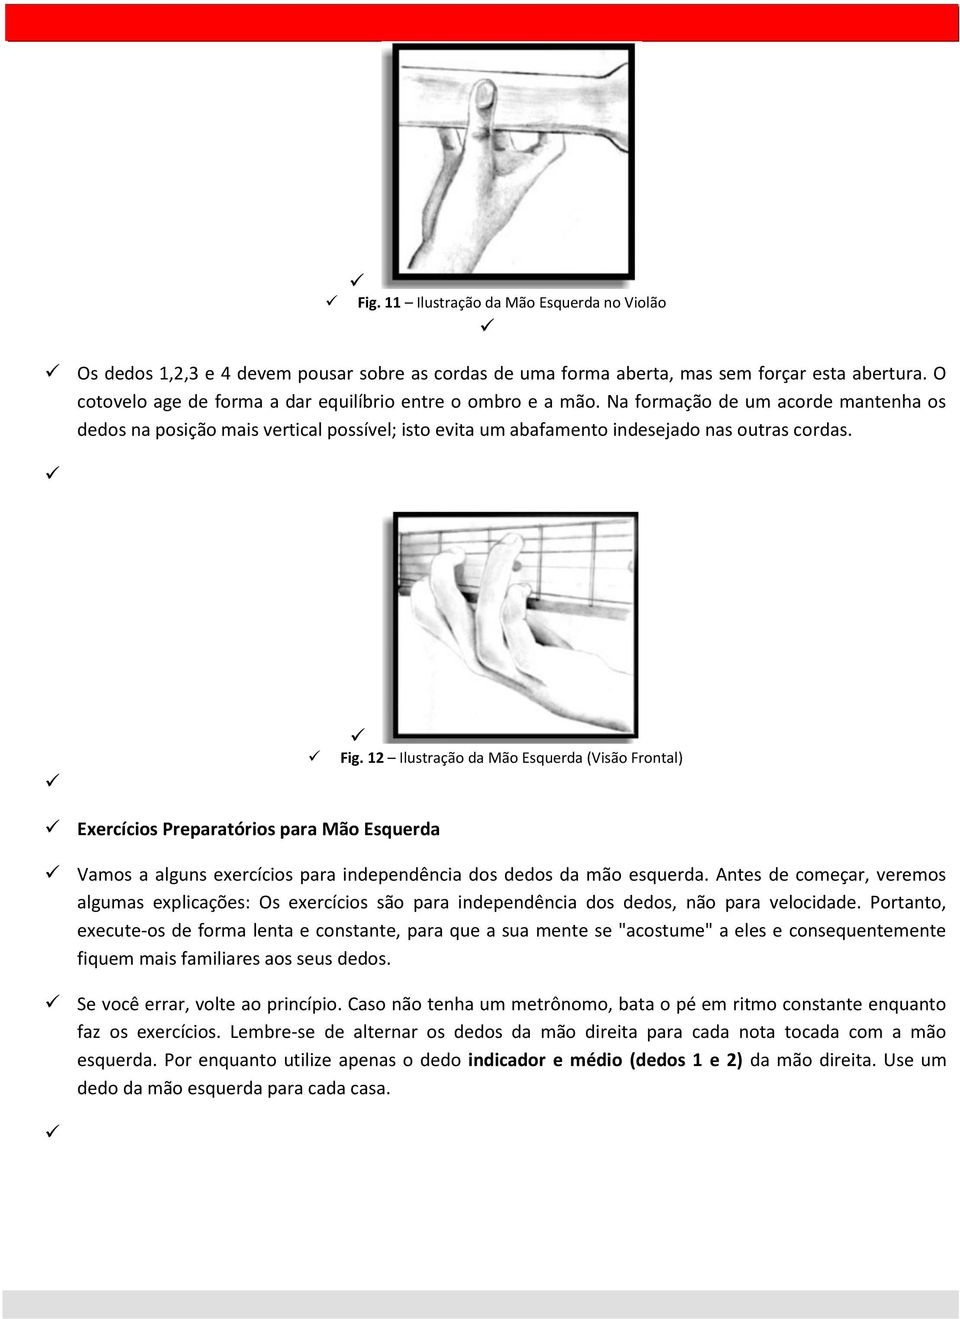 Fig. 12 Ilustração da Mão Esquerda (Visão Frontal) Exercícios Preparatórios para Mão Esquerda Vamos a alguns exercícios para independência dos dedos da mão esquerda.